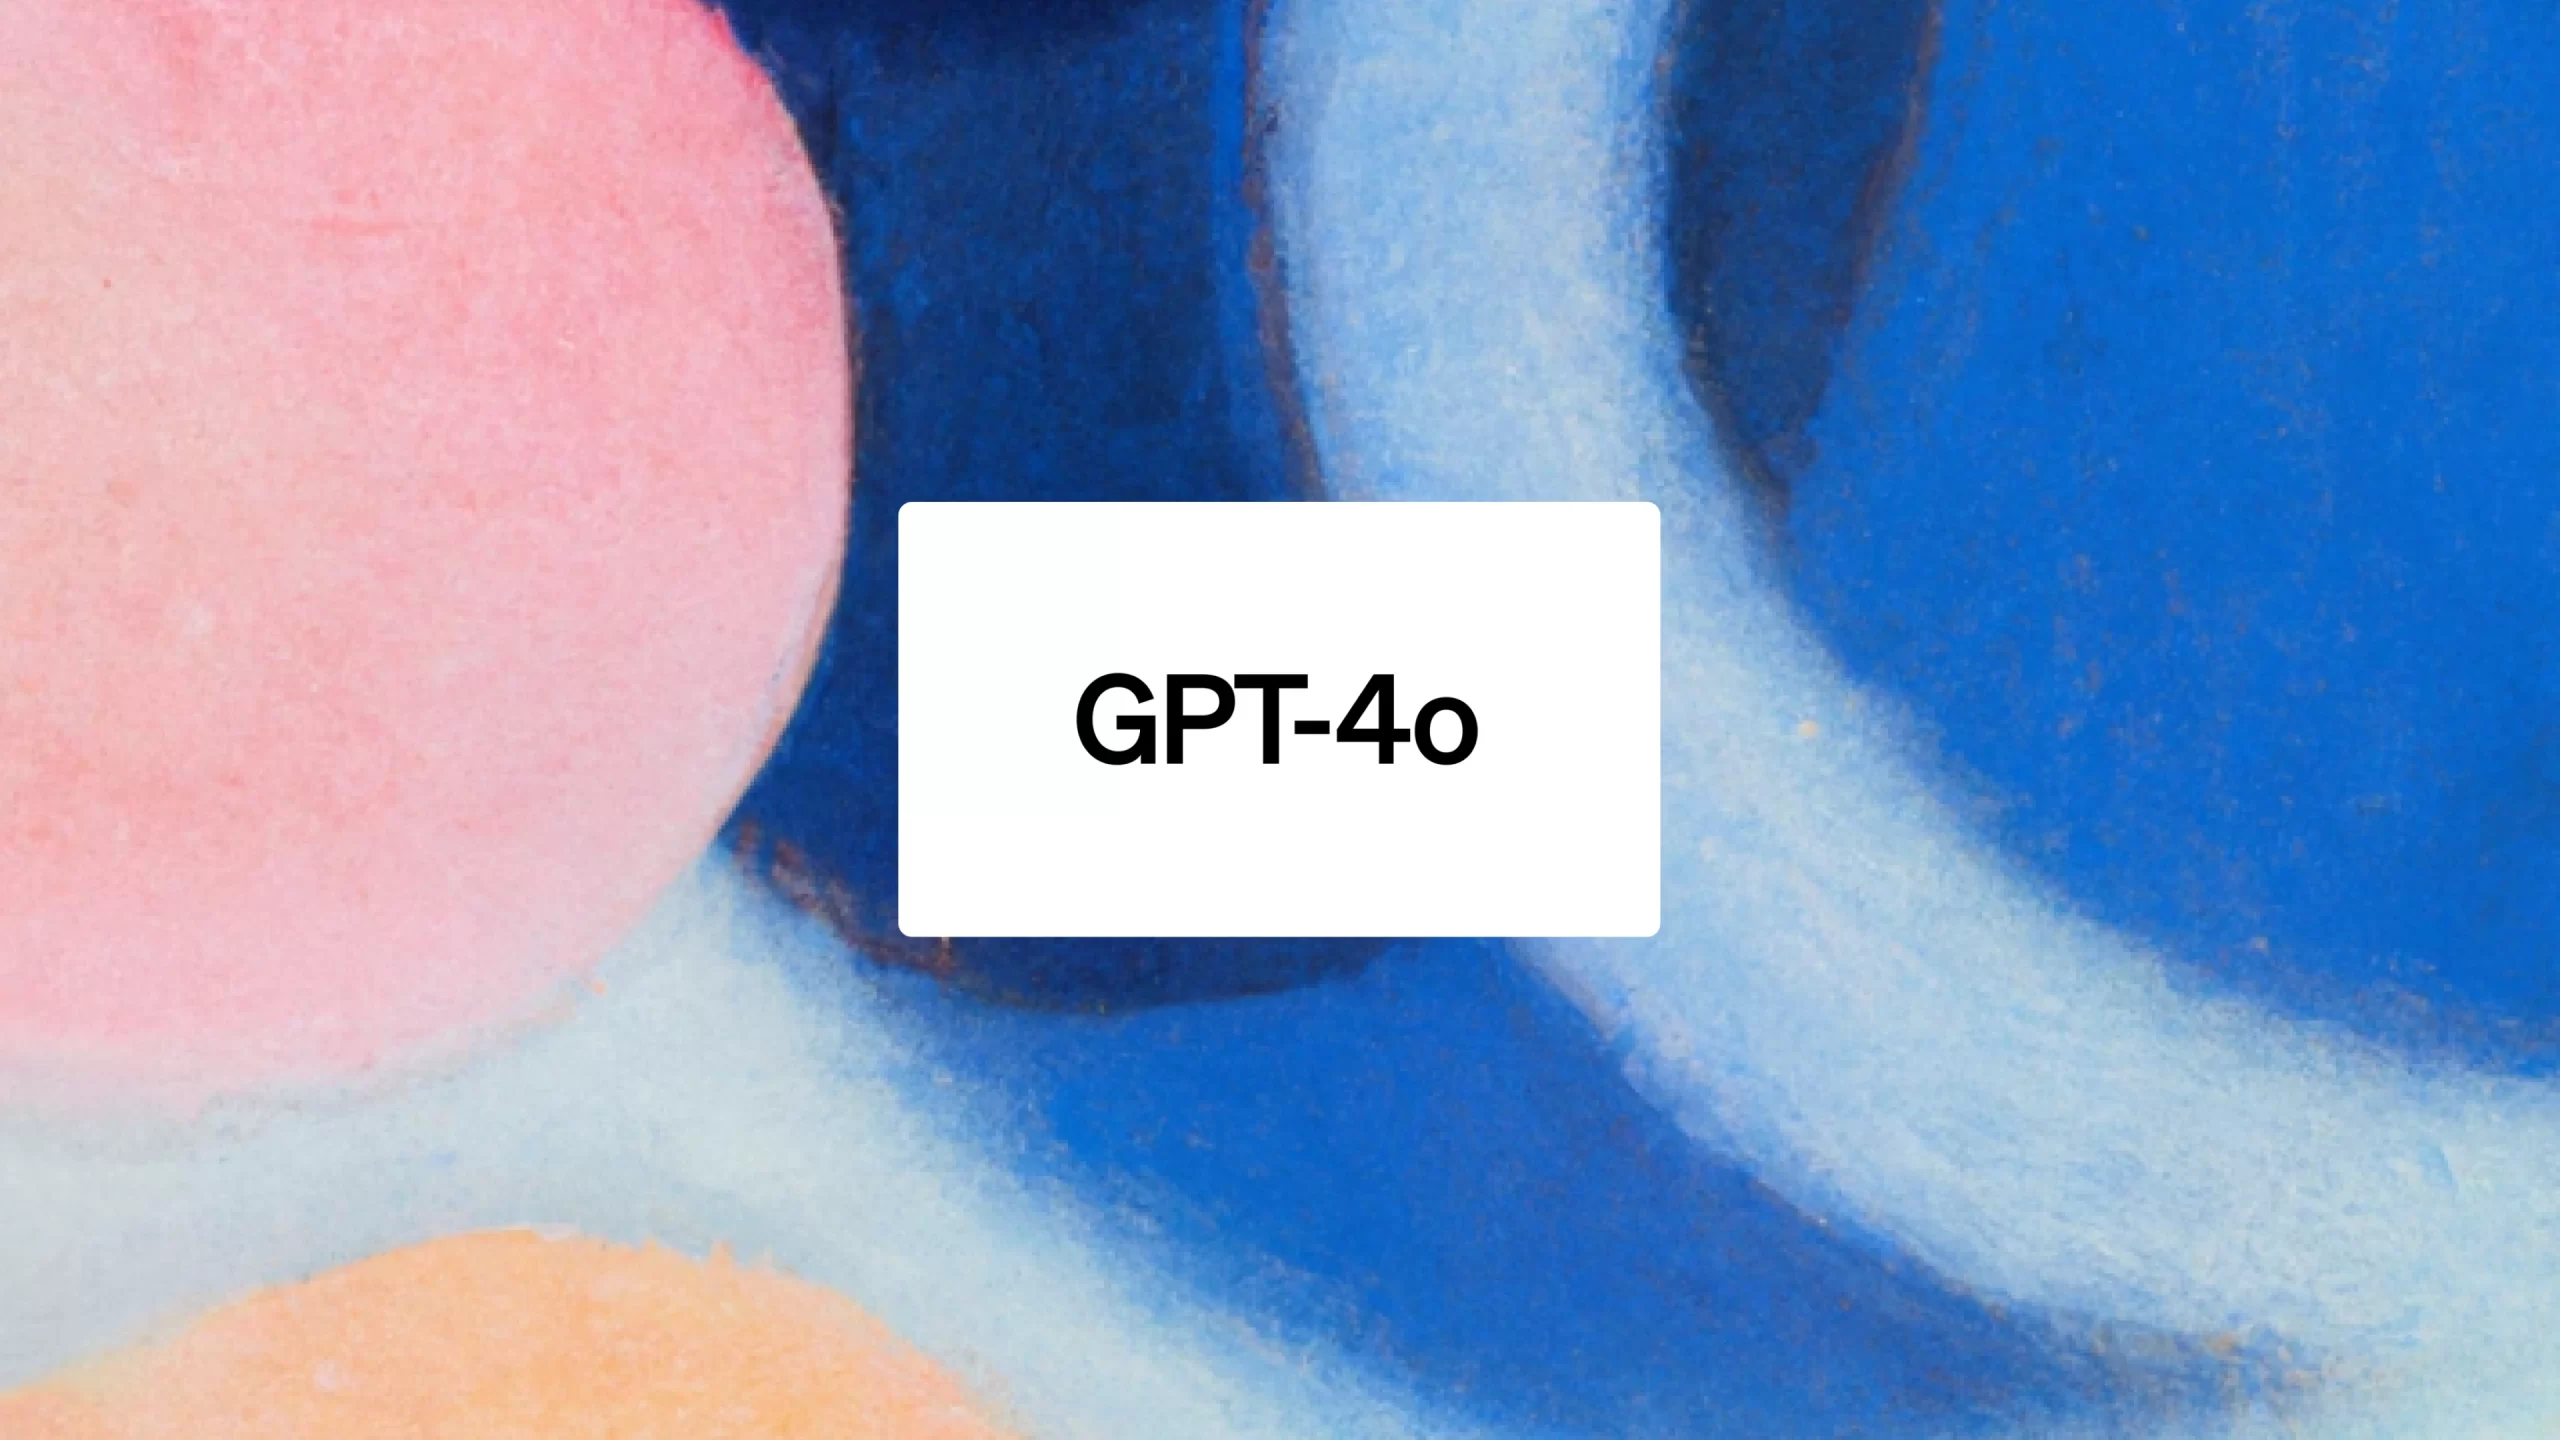 المساعد "GPT-4o": ثورة الذكاء الاصطناعي تتجسد في تحديث جديد